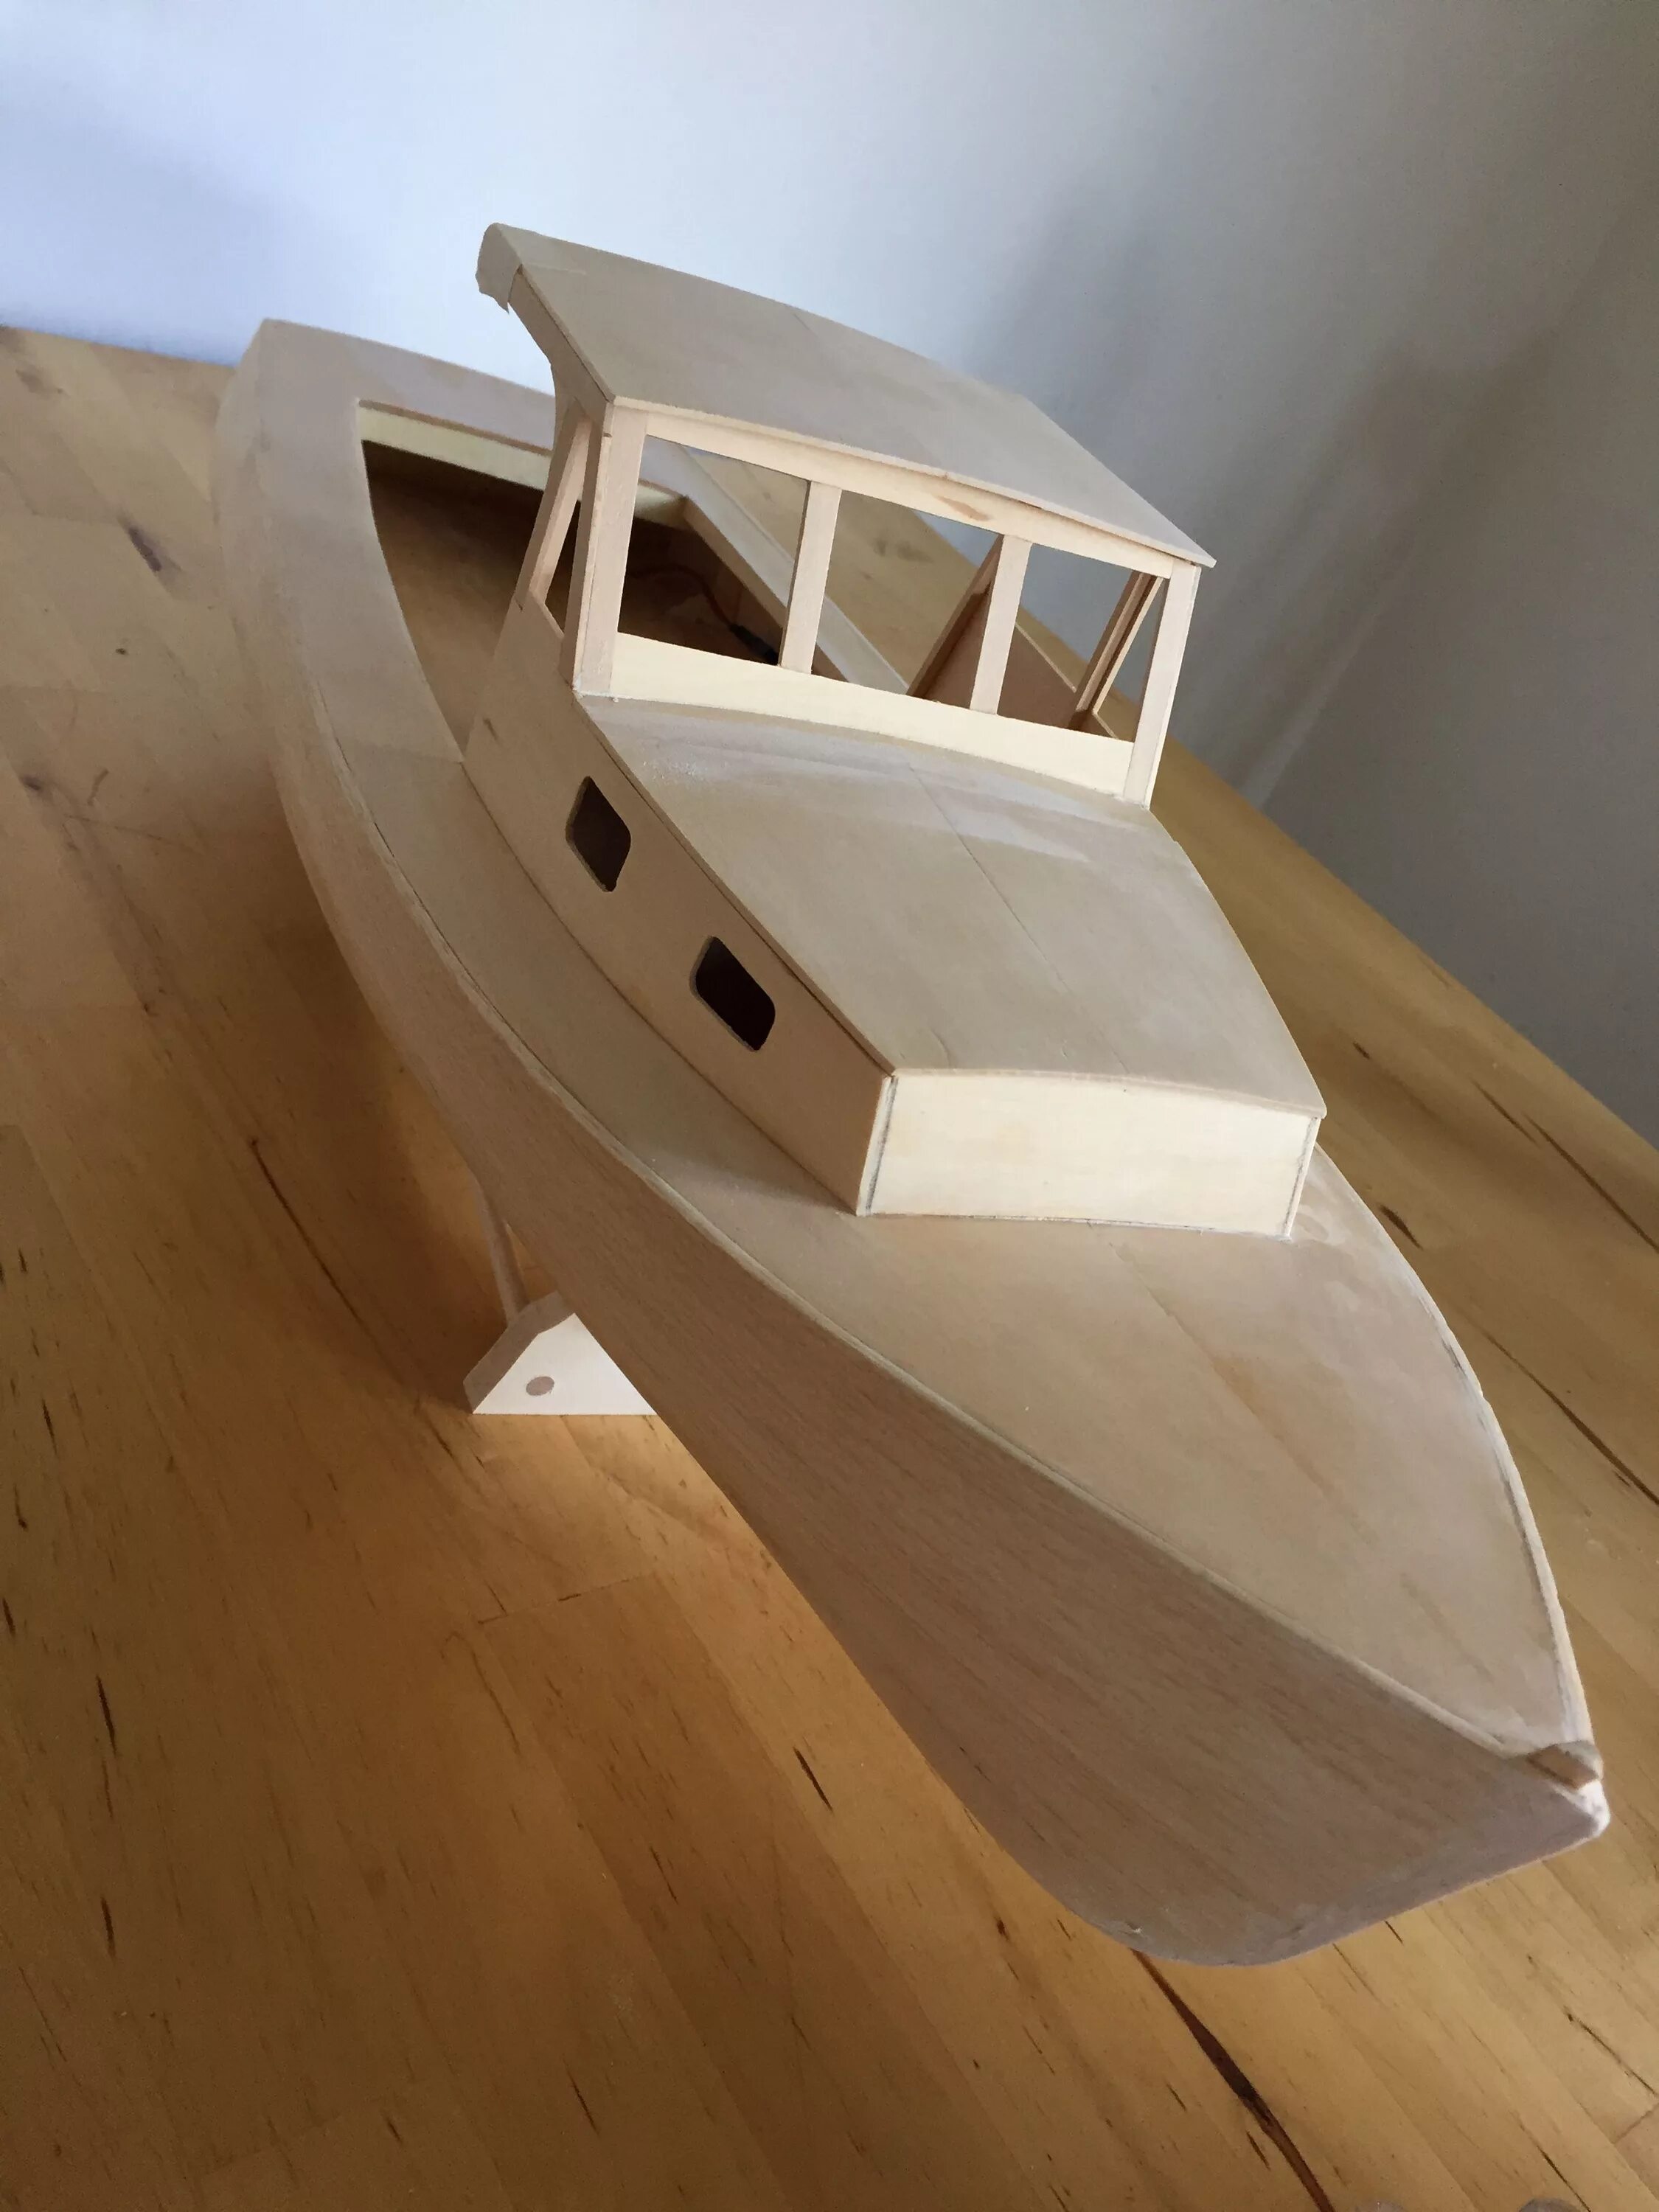 Моделирование из дерева. Модель кораблика из дерева. Корабль из фанеры. Модель катера из фанеры. Корабль самодельный